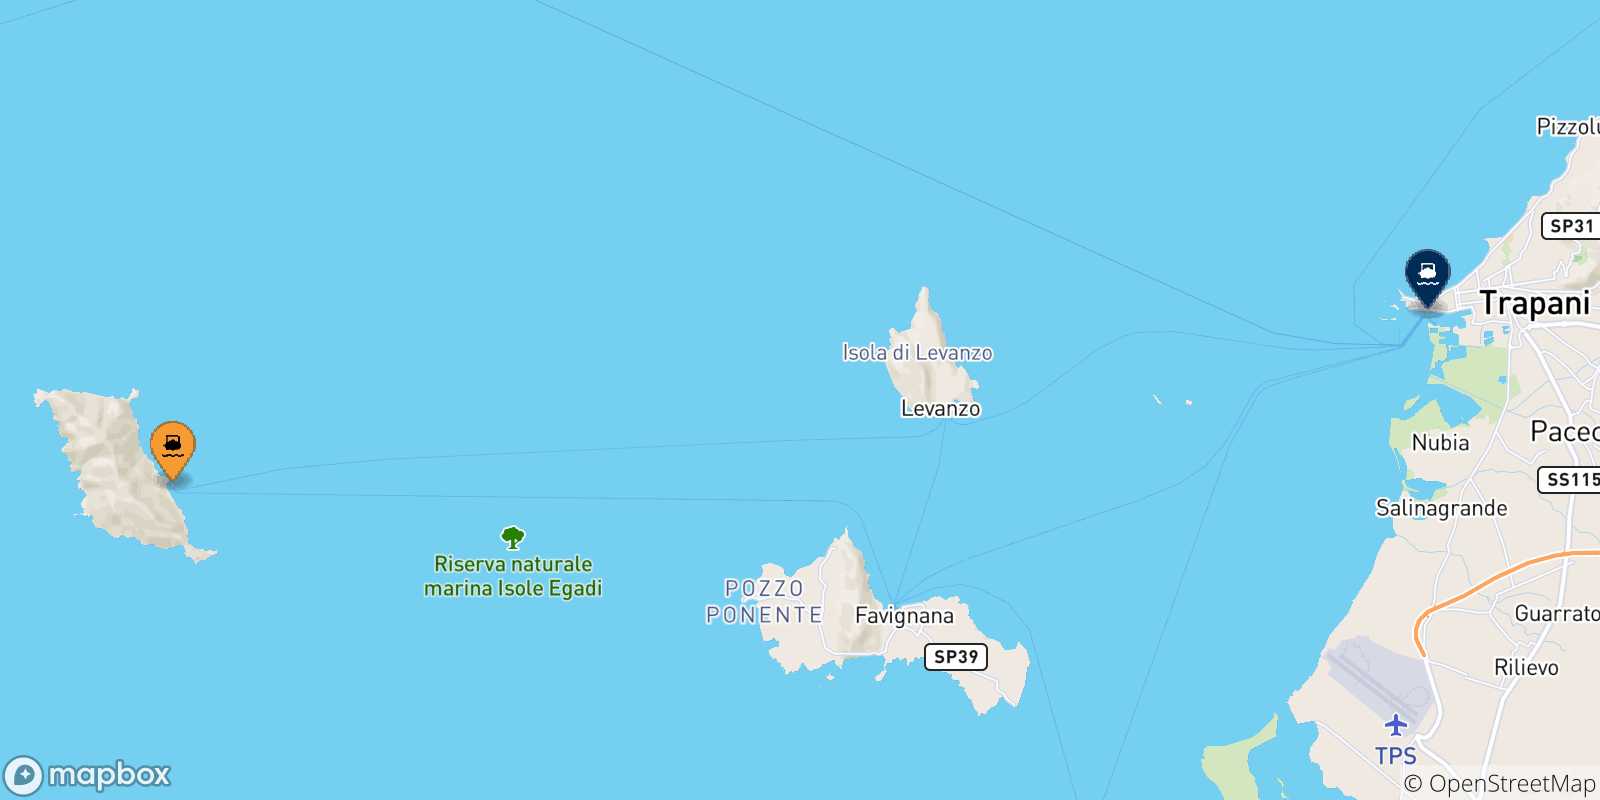 Mappa delle possibili rotte tra Marettimo e la Sicilia